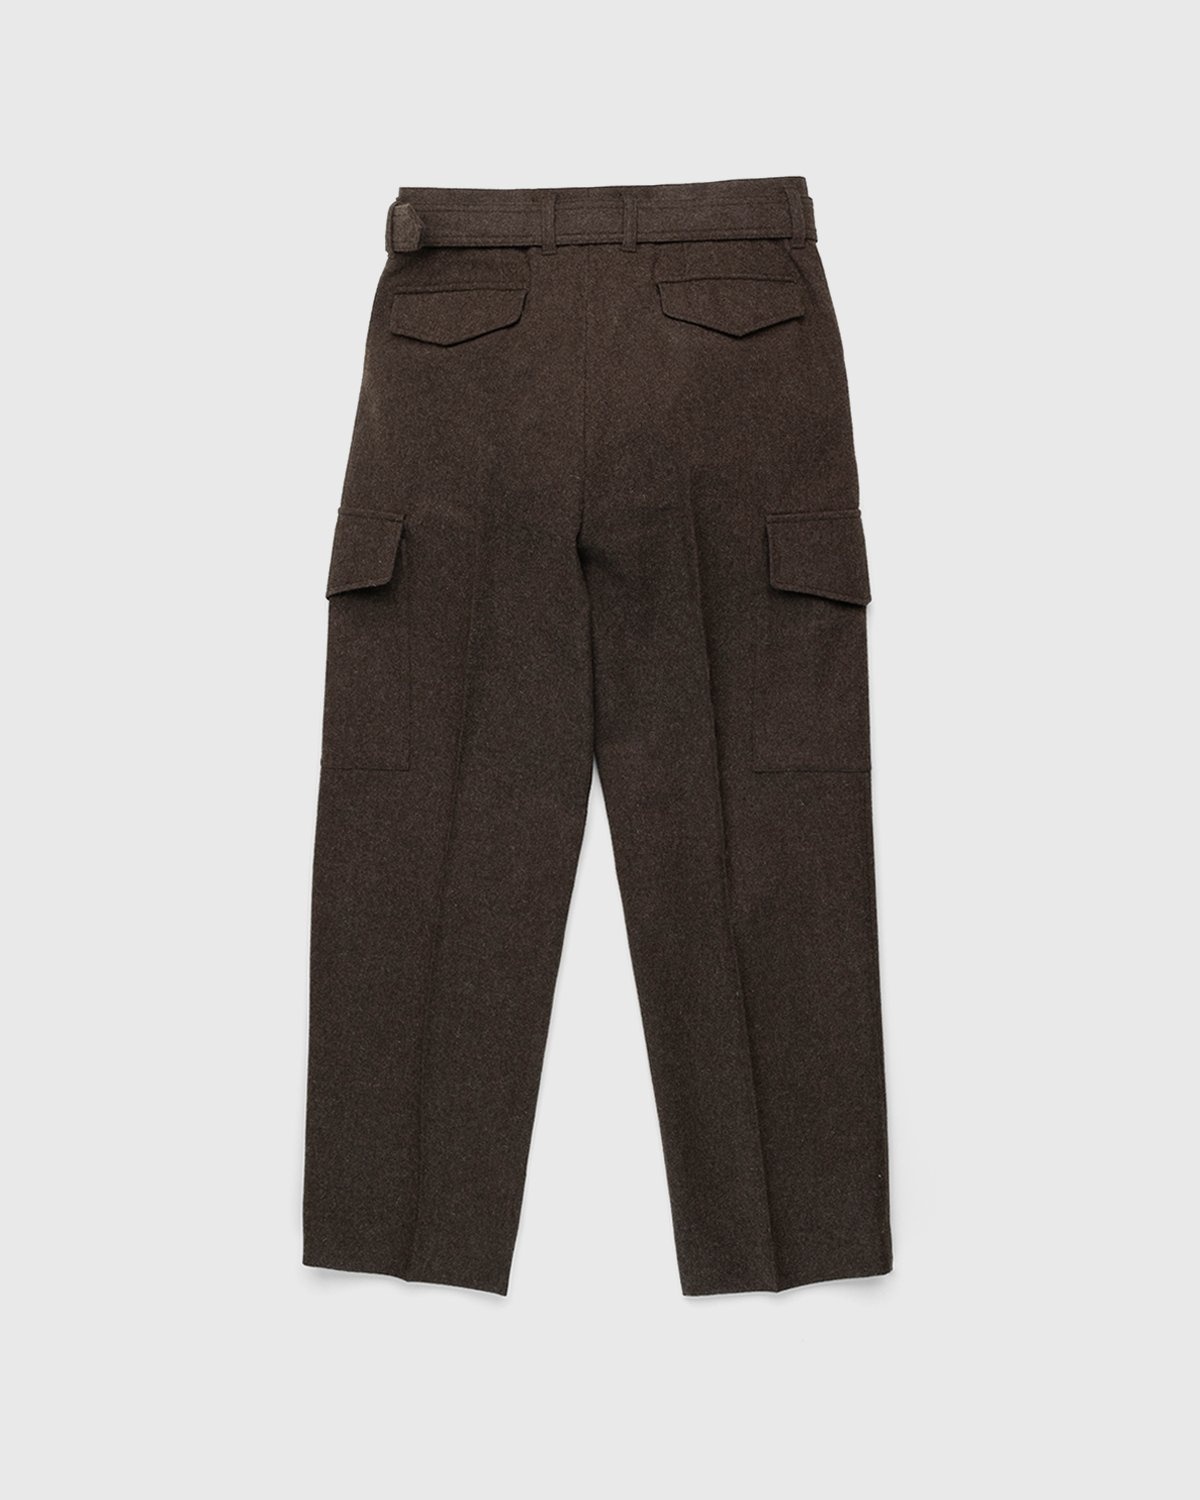 Auralee – High-Waisted Shetland Wool Pants Dark Brown - Pants - Brown - Image 2